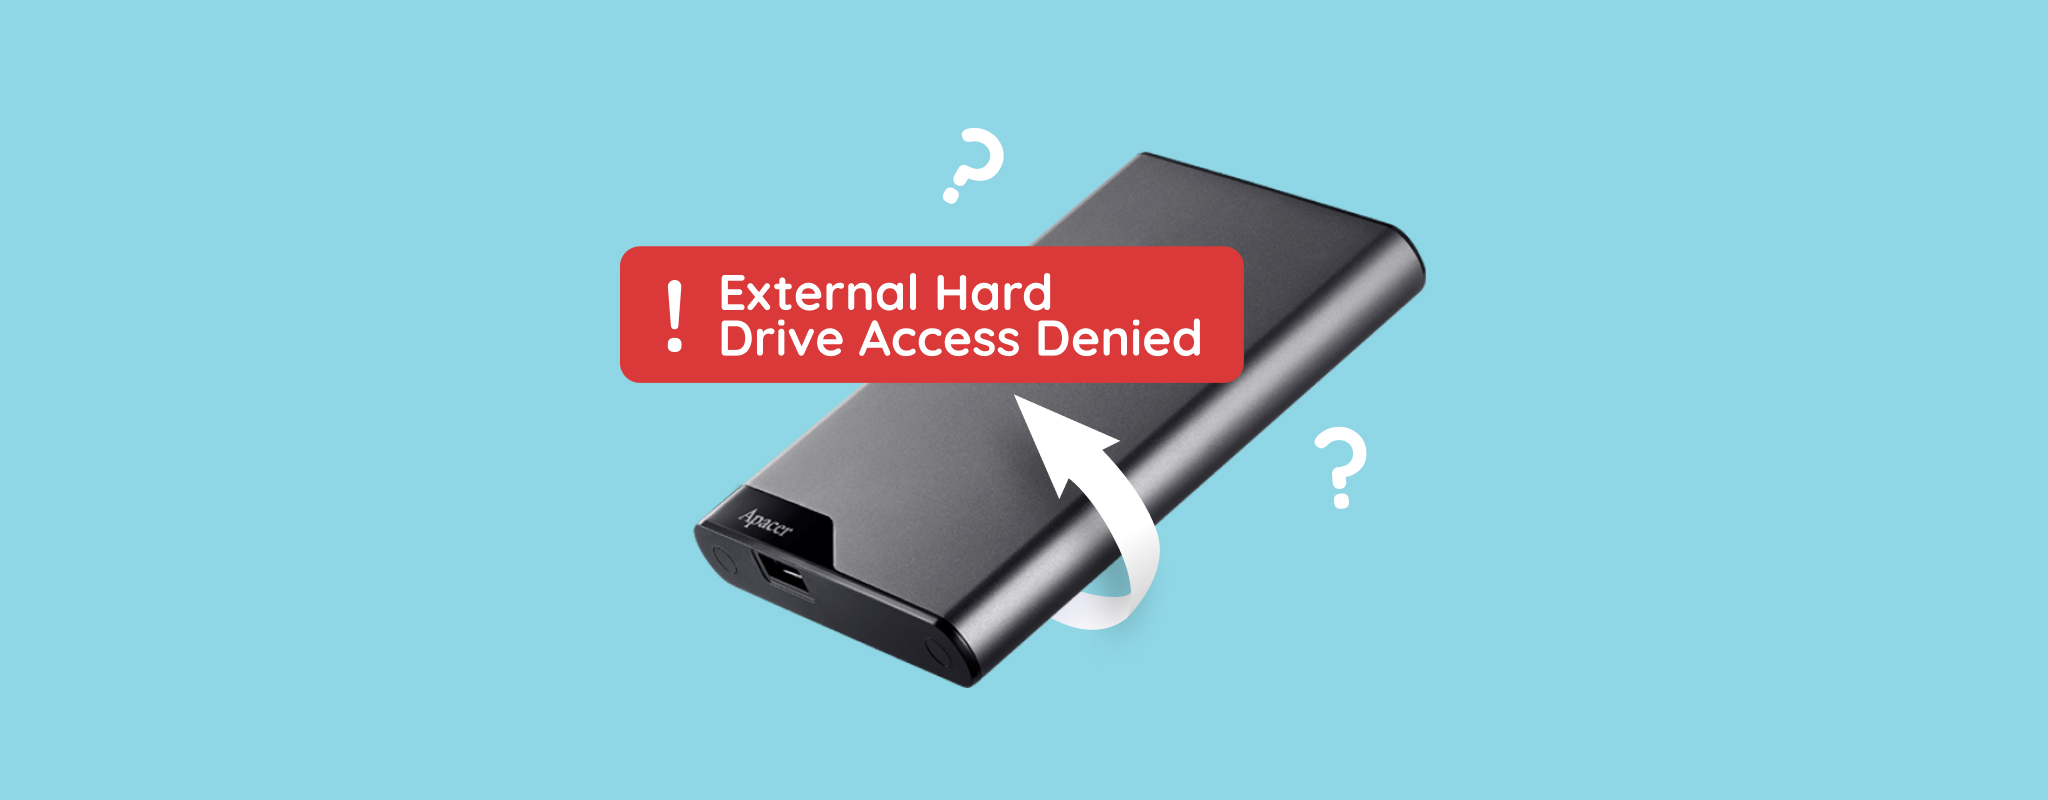 External Hard Drive Access Denied